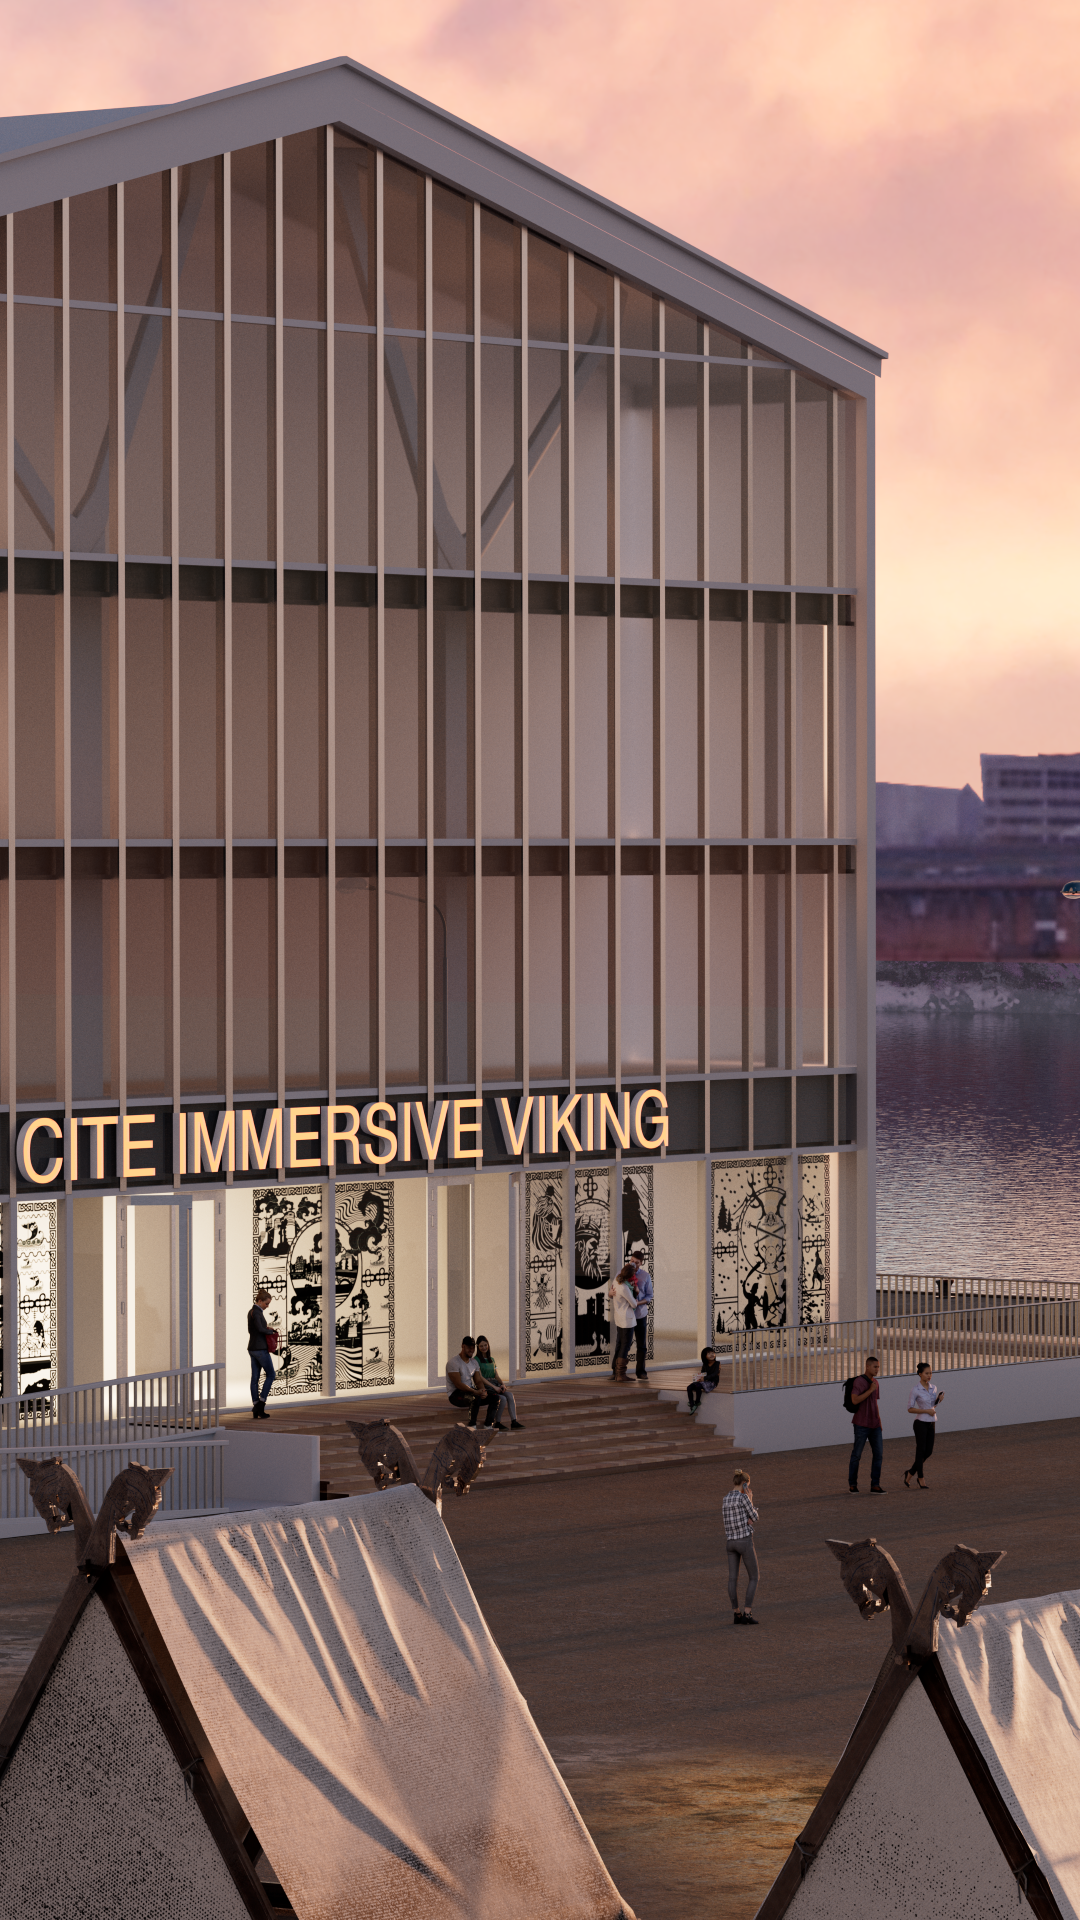 Vue de préfiguration de la Cité Immersive Viking - ©Benoit-Camus